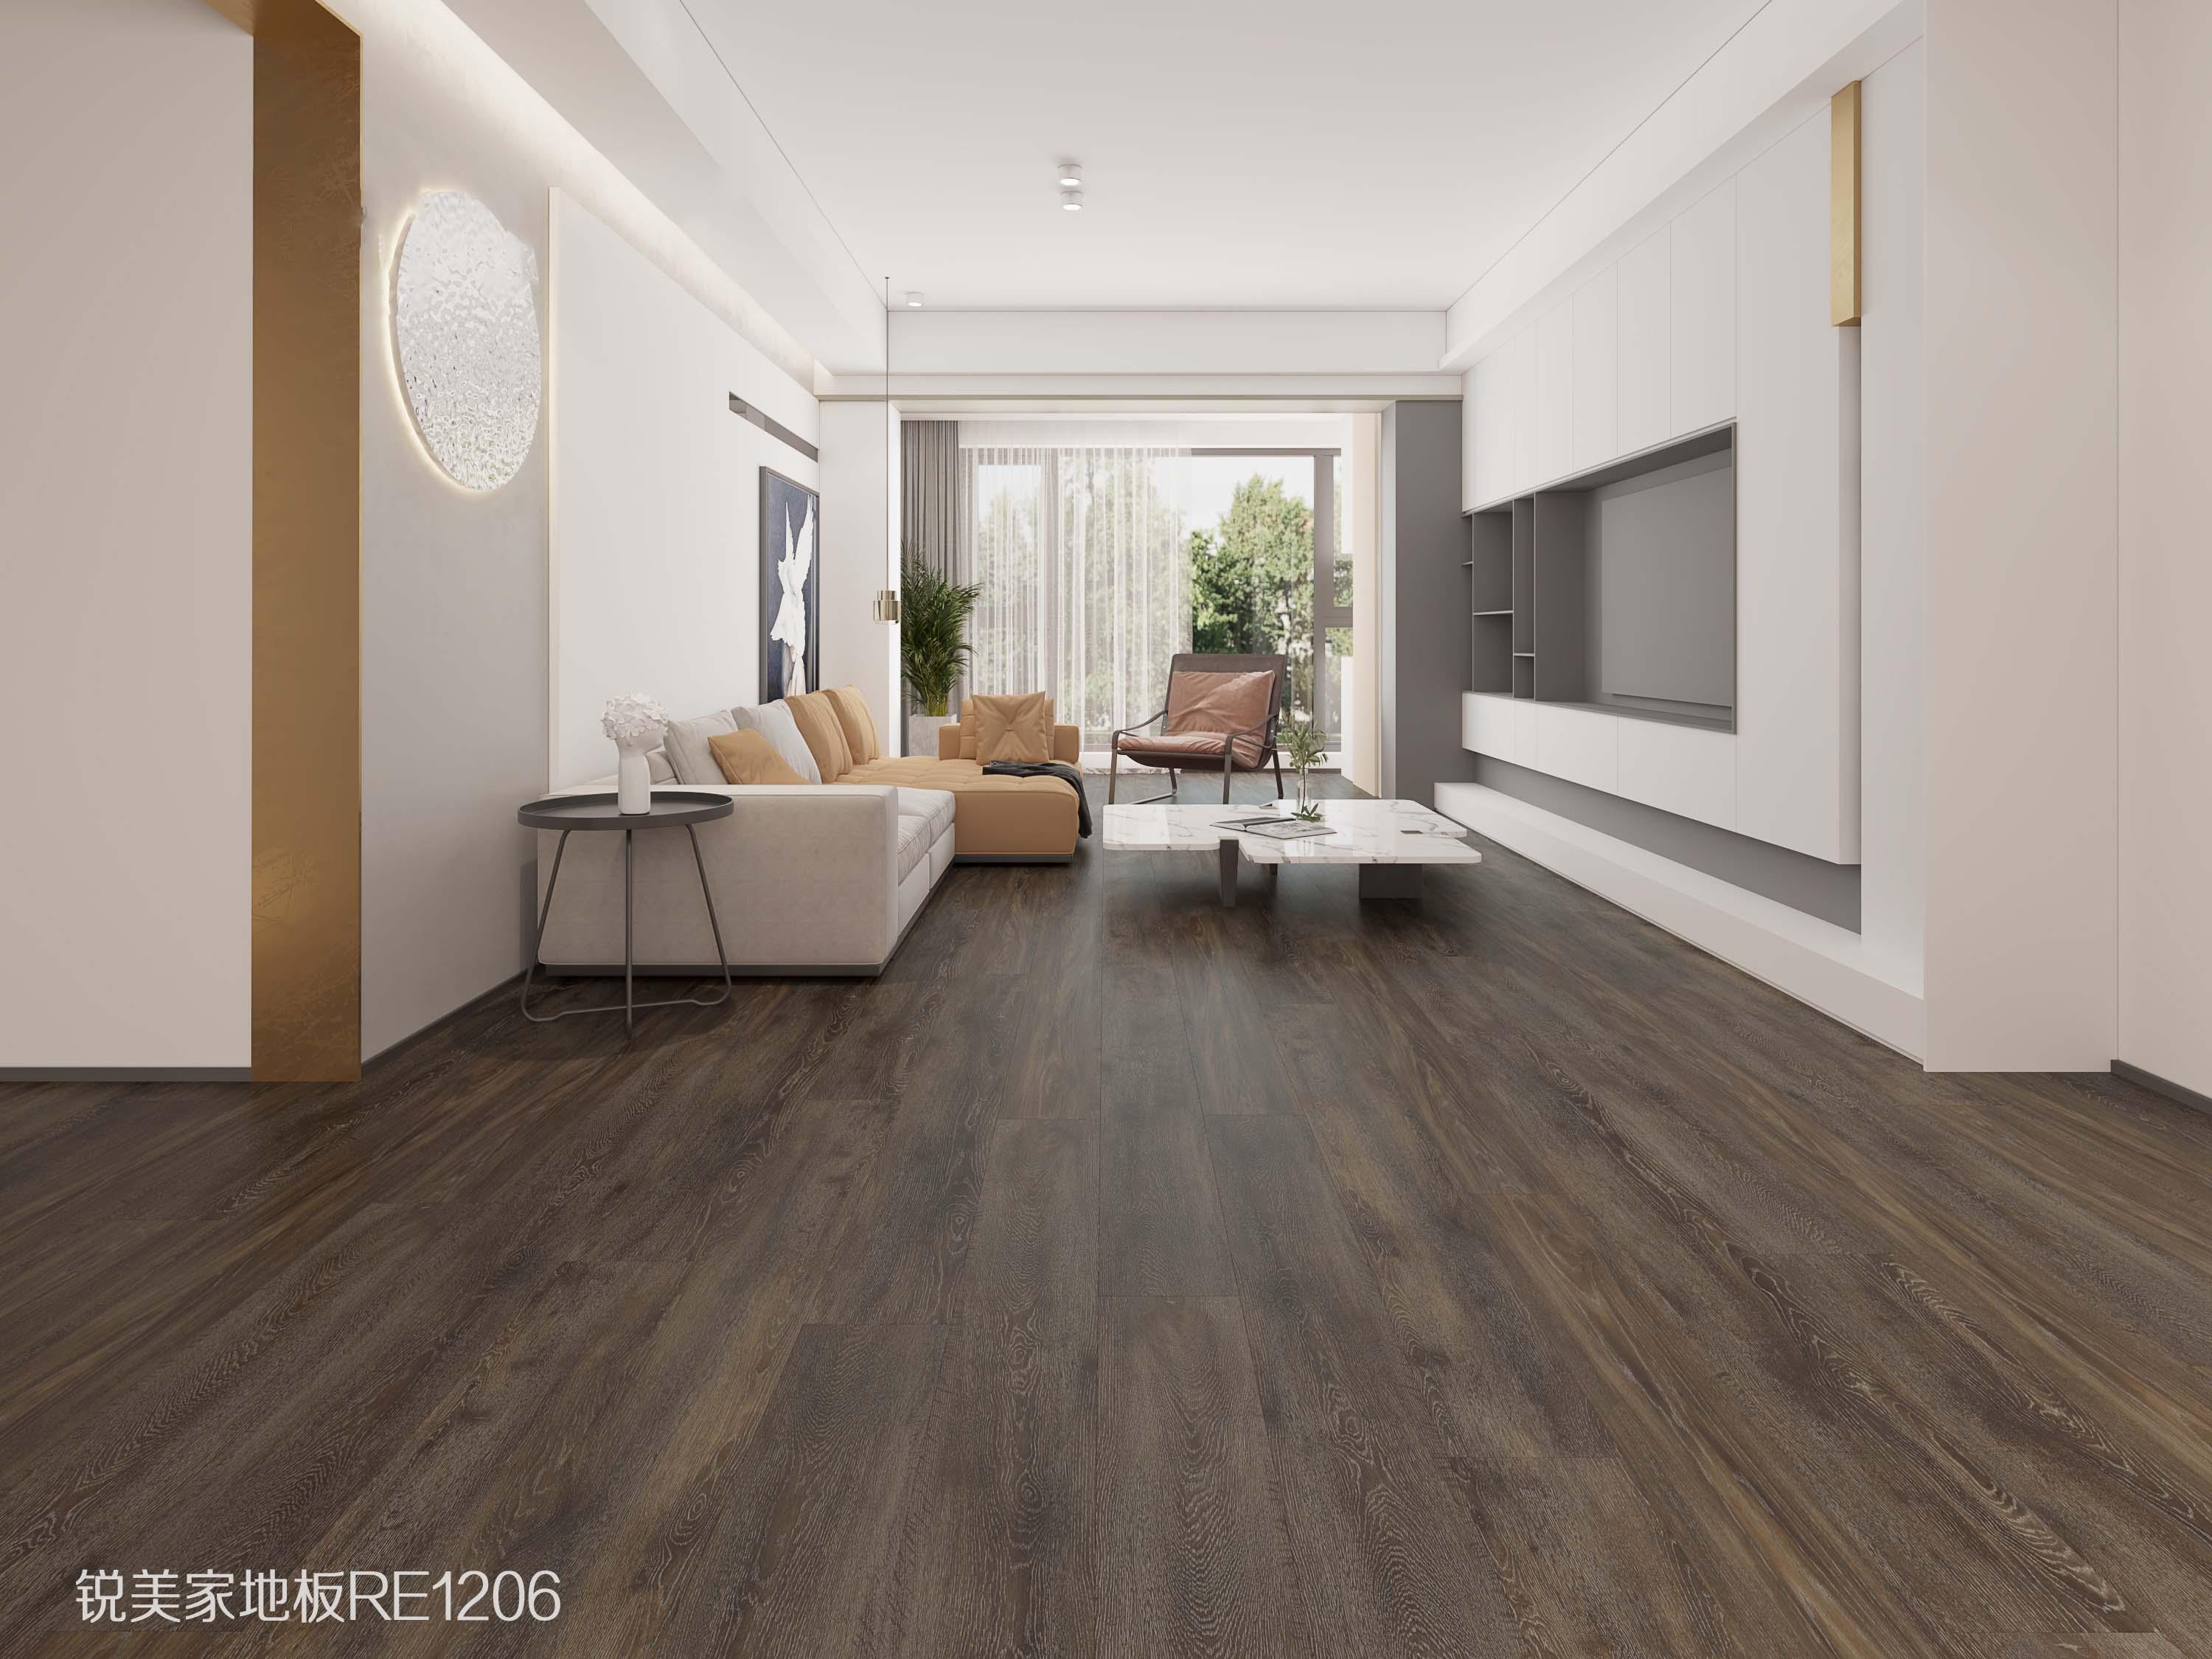 现代风格客厅家装木地板效果图 深棕色地板图片-地板网